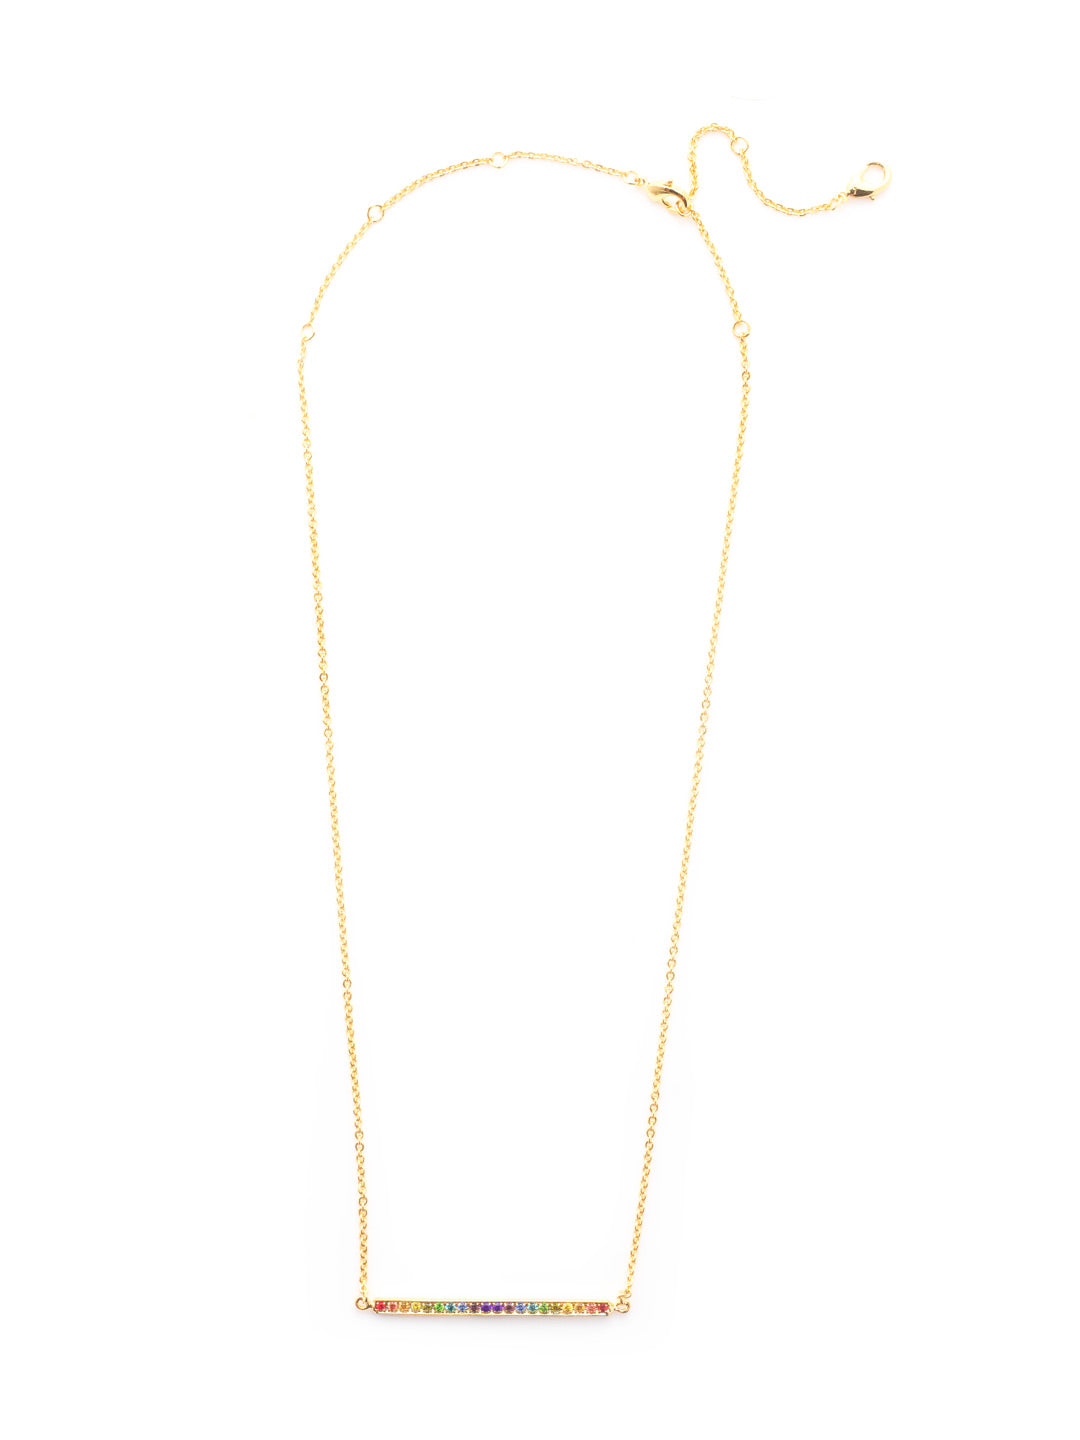 Product Image: Rhinstone Bar Pendant Necklace